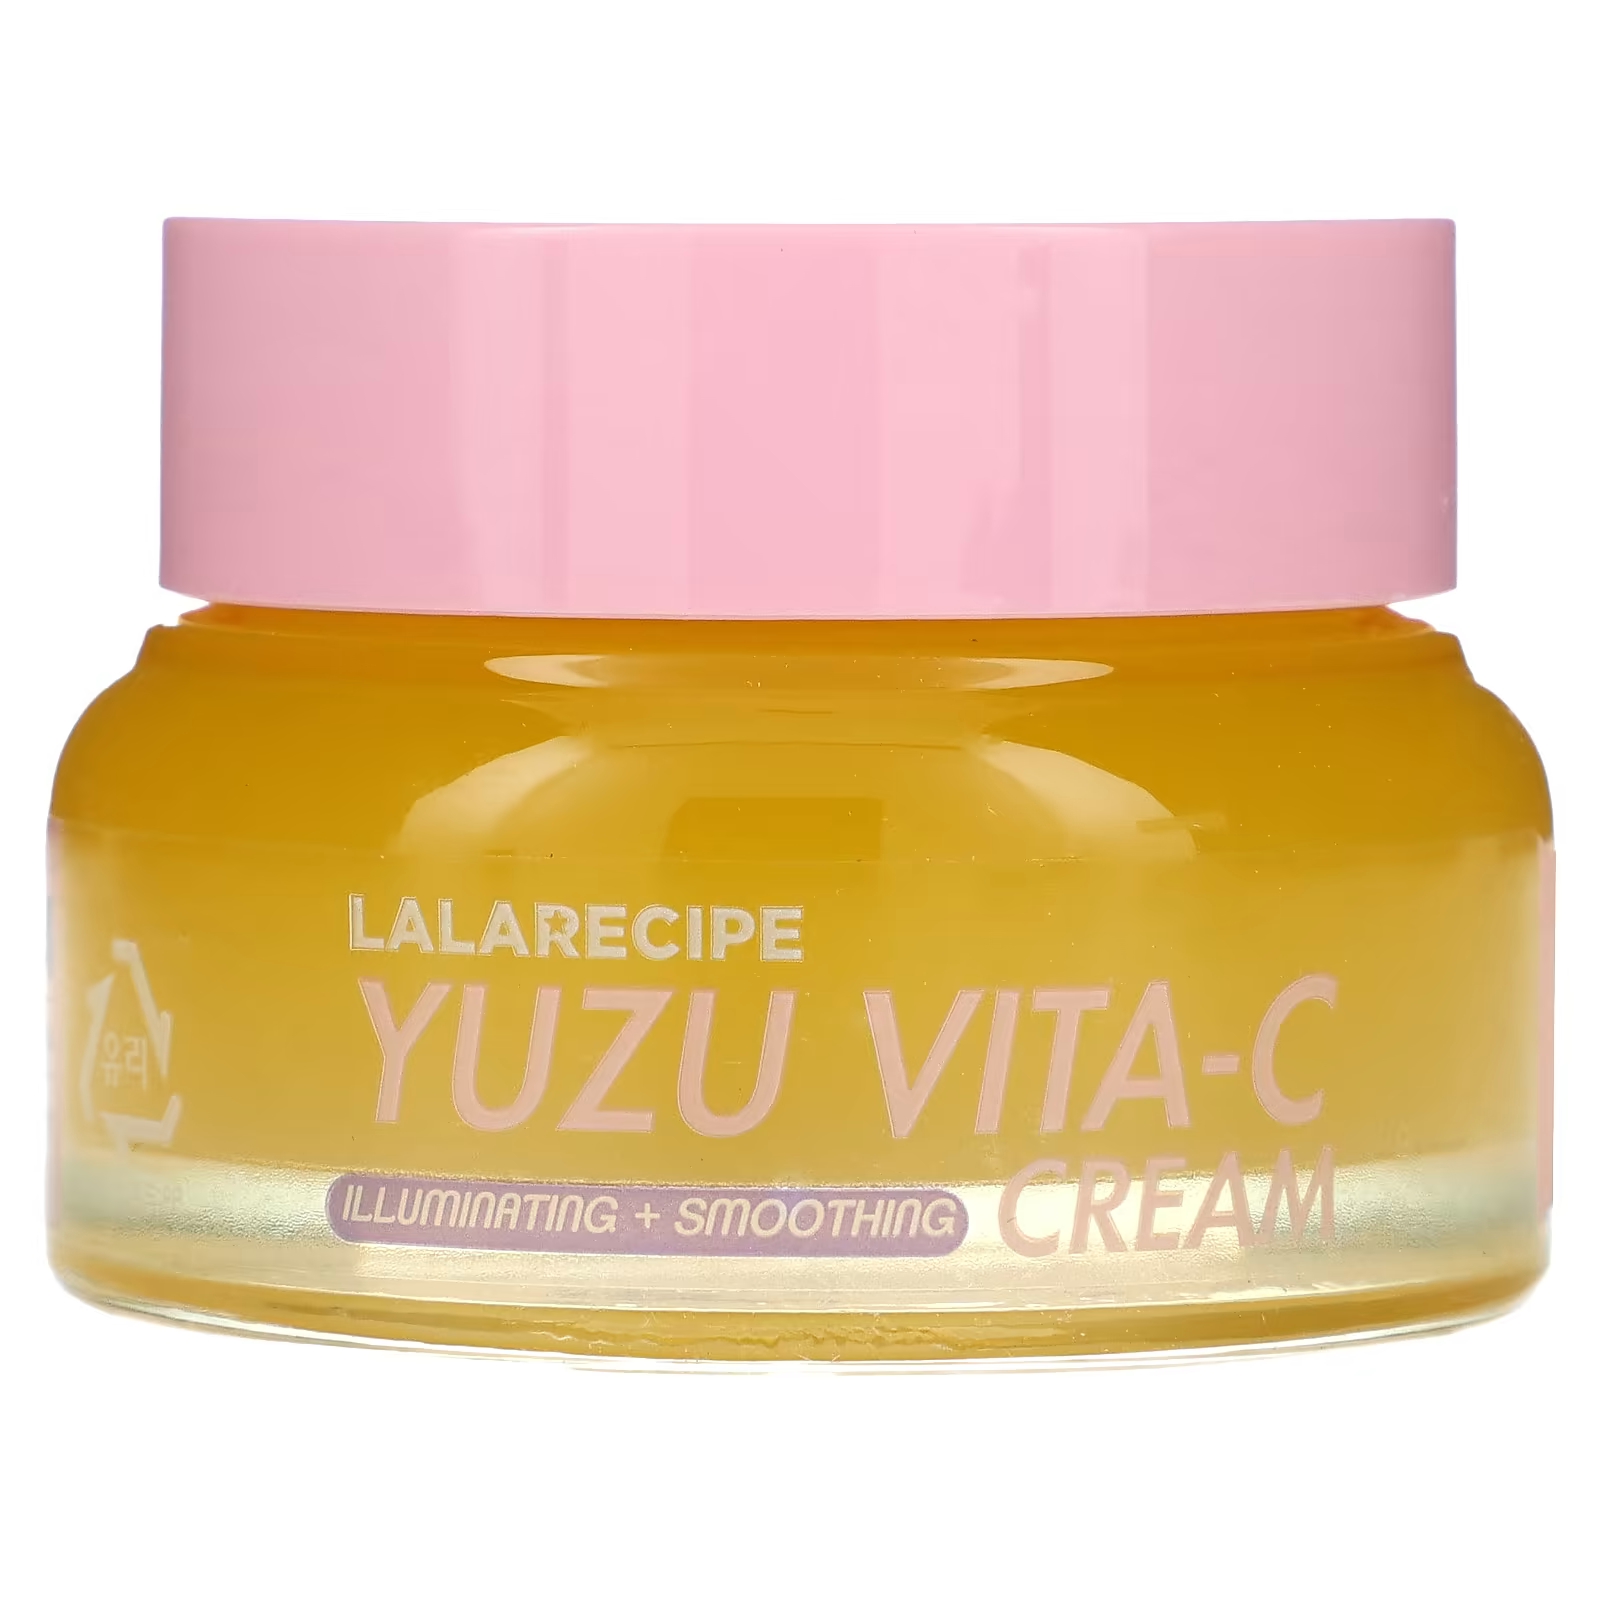 Крем Lalarecipe Yuzu Vita-C, 50 мл